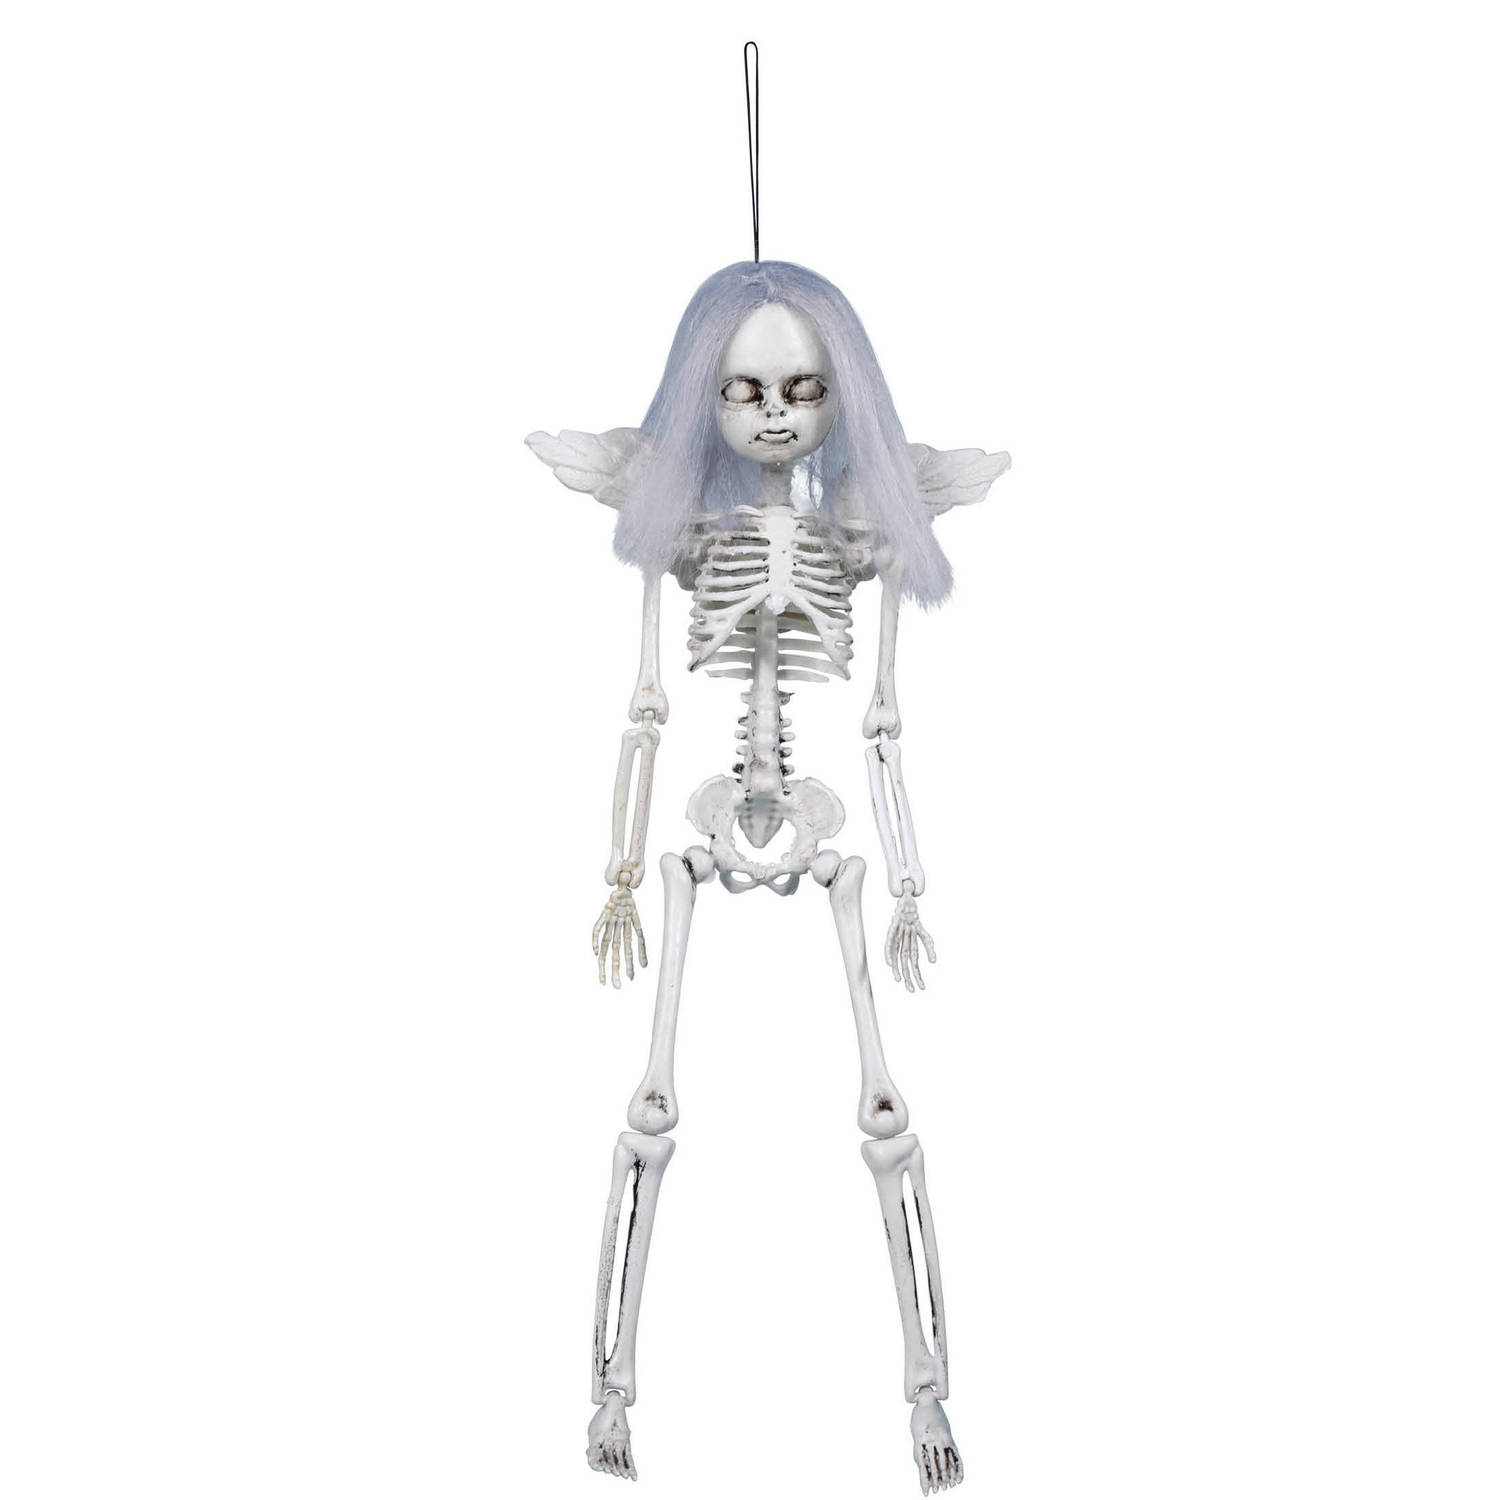 Fiestas Horror decoratie skelet/geraamte pop - engel des doods - 40 cm - griezelige Halloween hangdecoratie